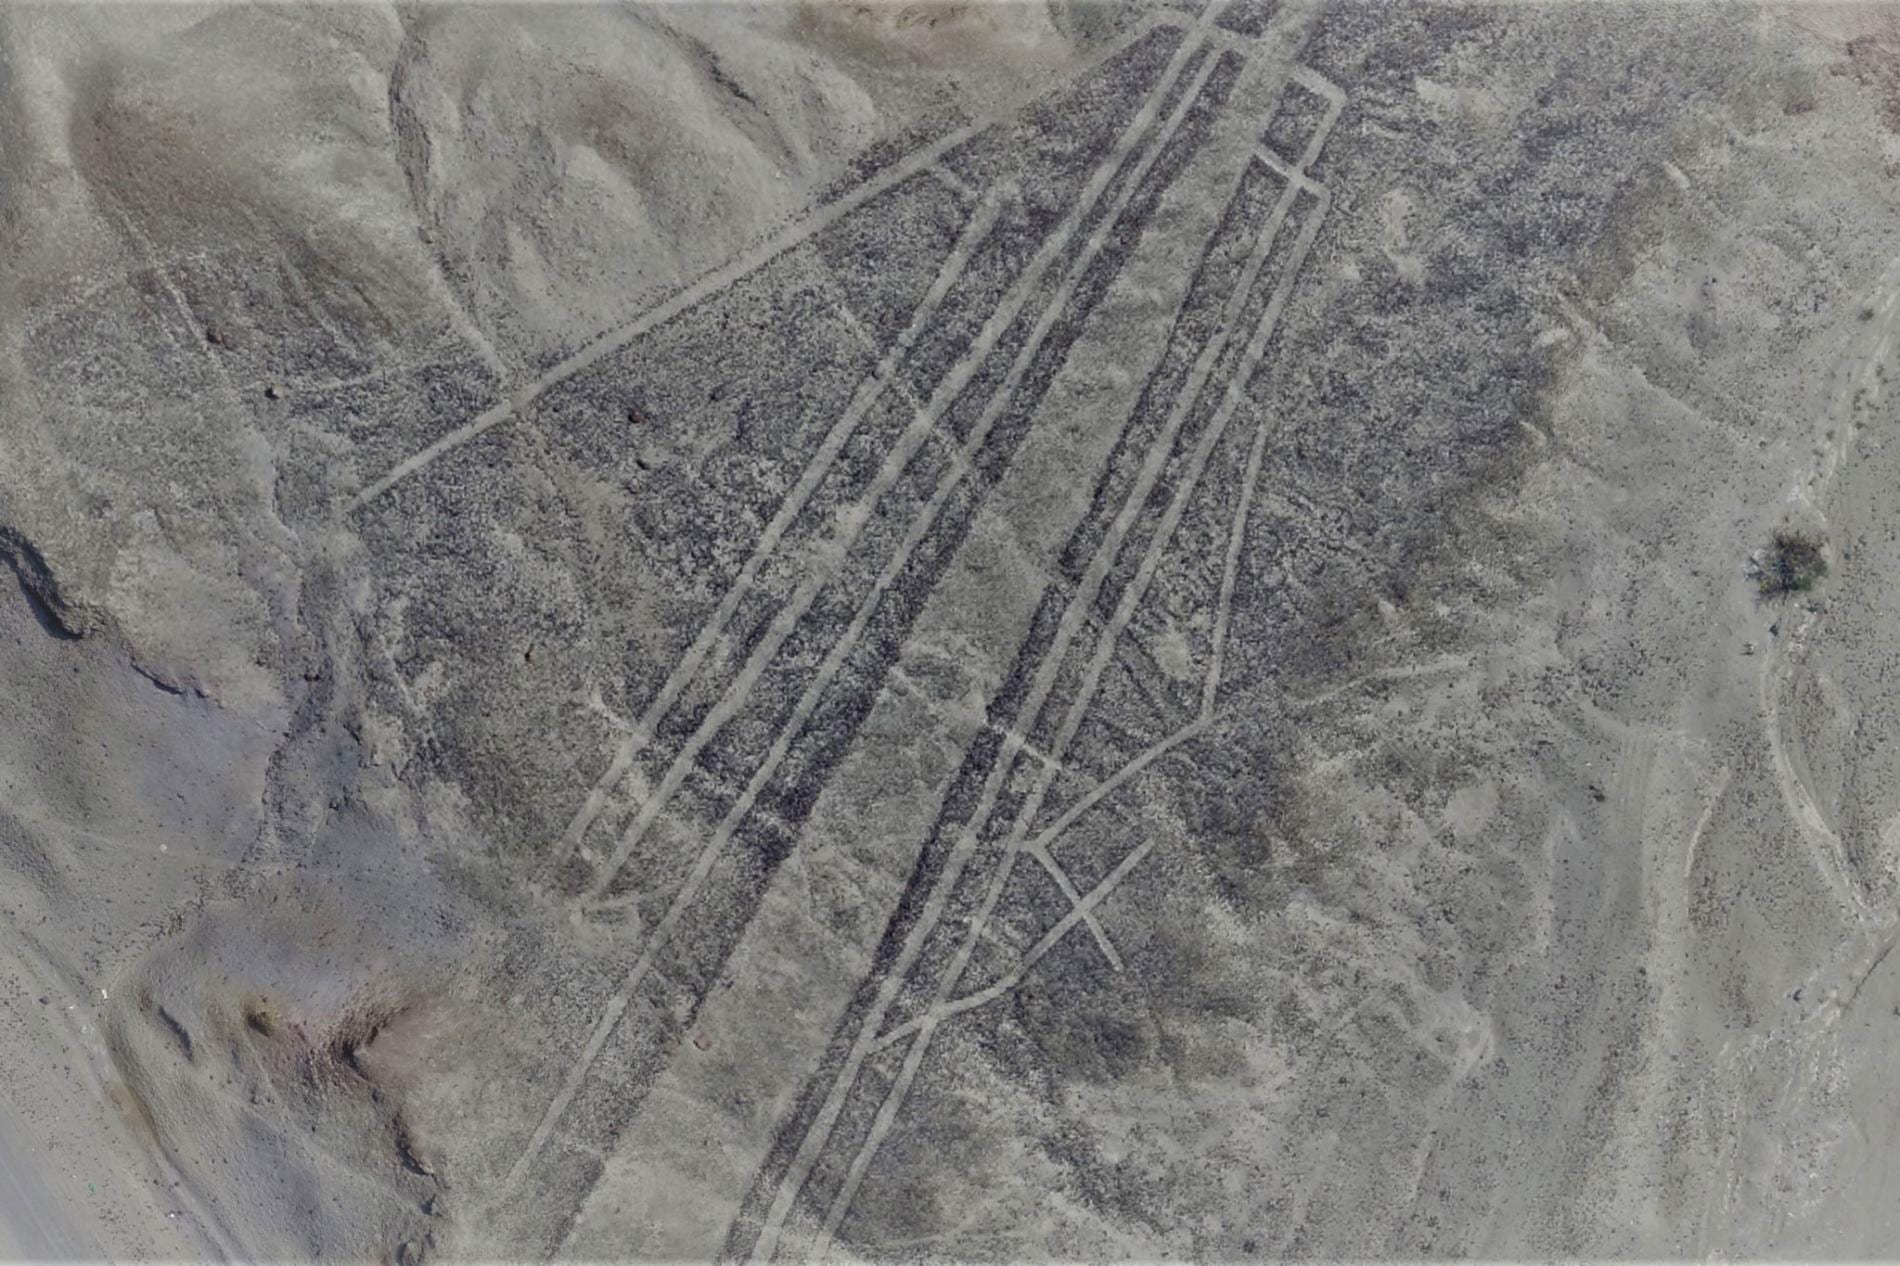 Risultati immagini per Palpa Nazca Project